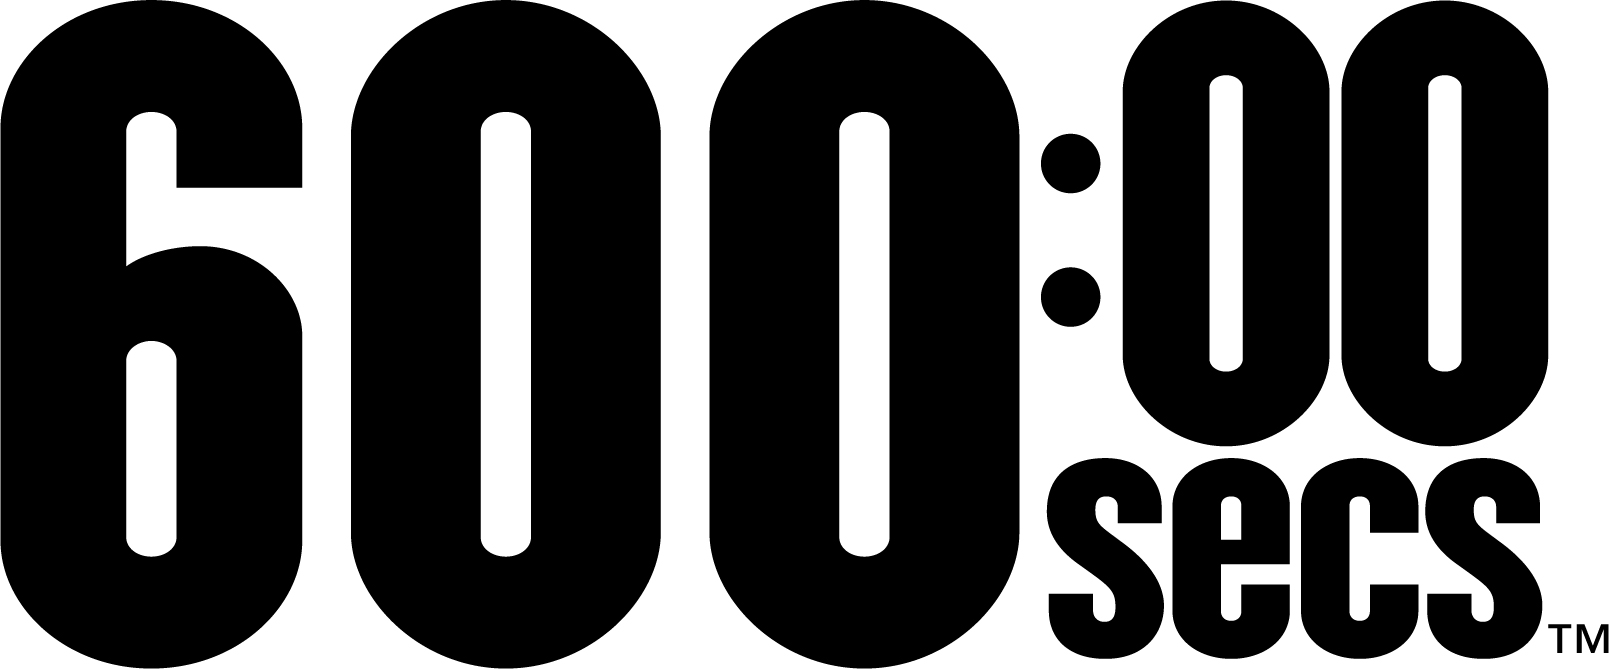 600 Secs Logo | BODi Workout